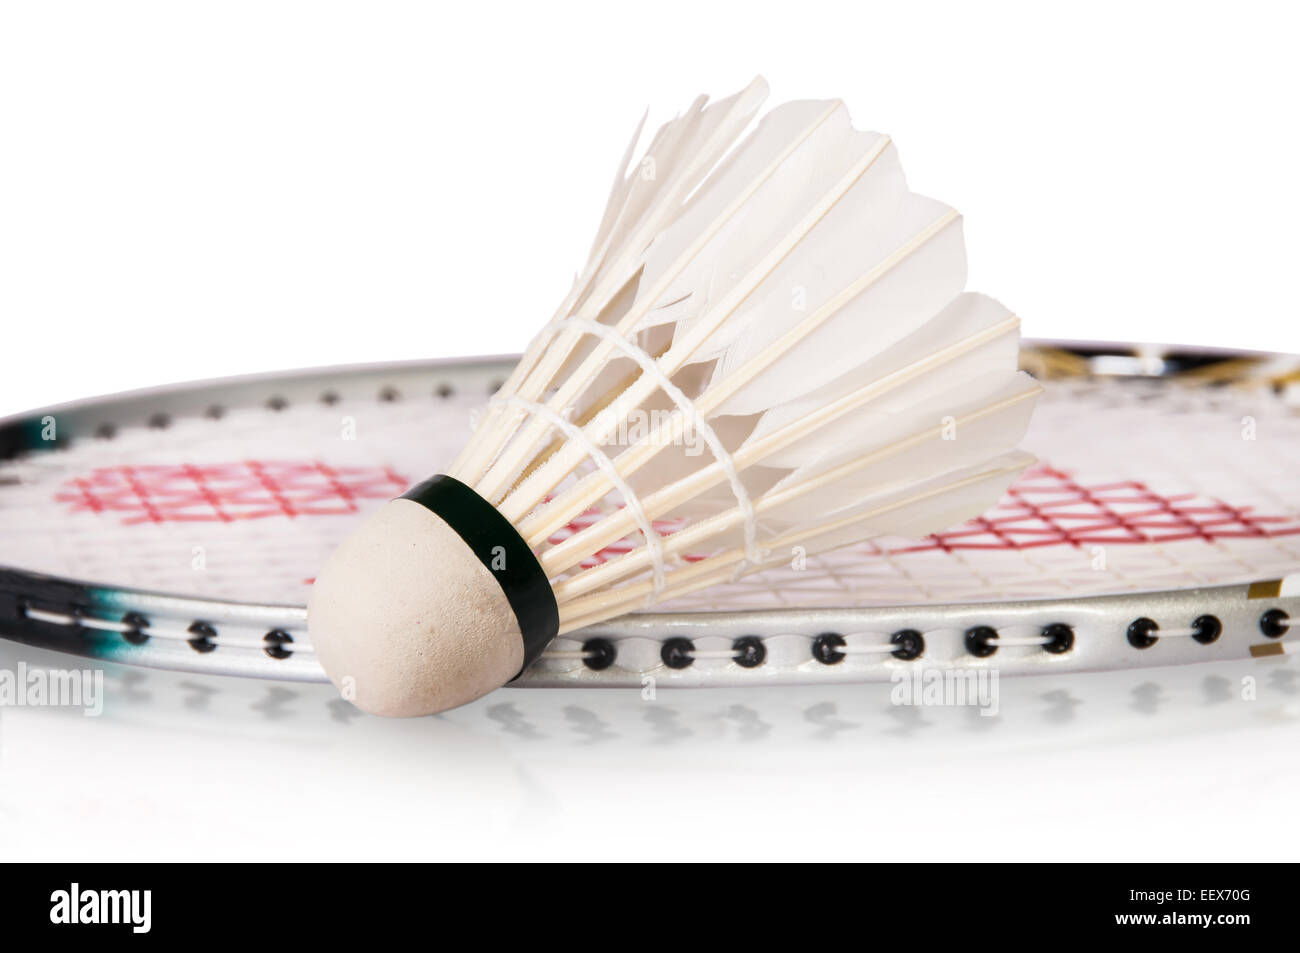 Volano vicino a badminton racchetta isolati su sfondo bianco Foto Stock